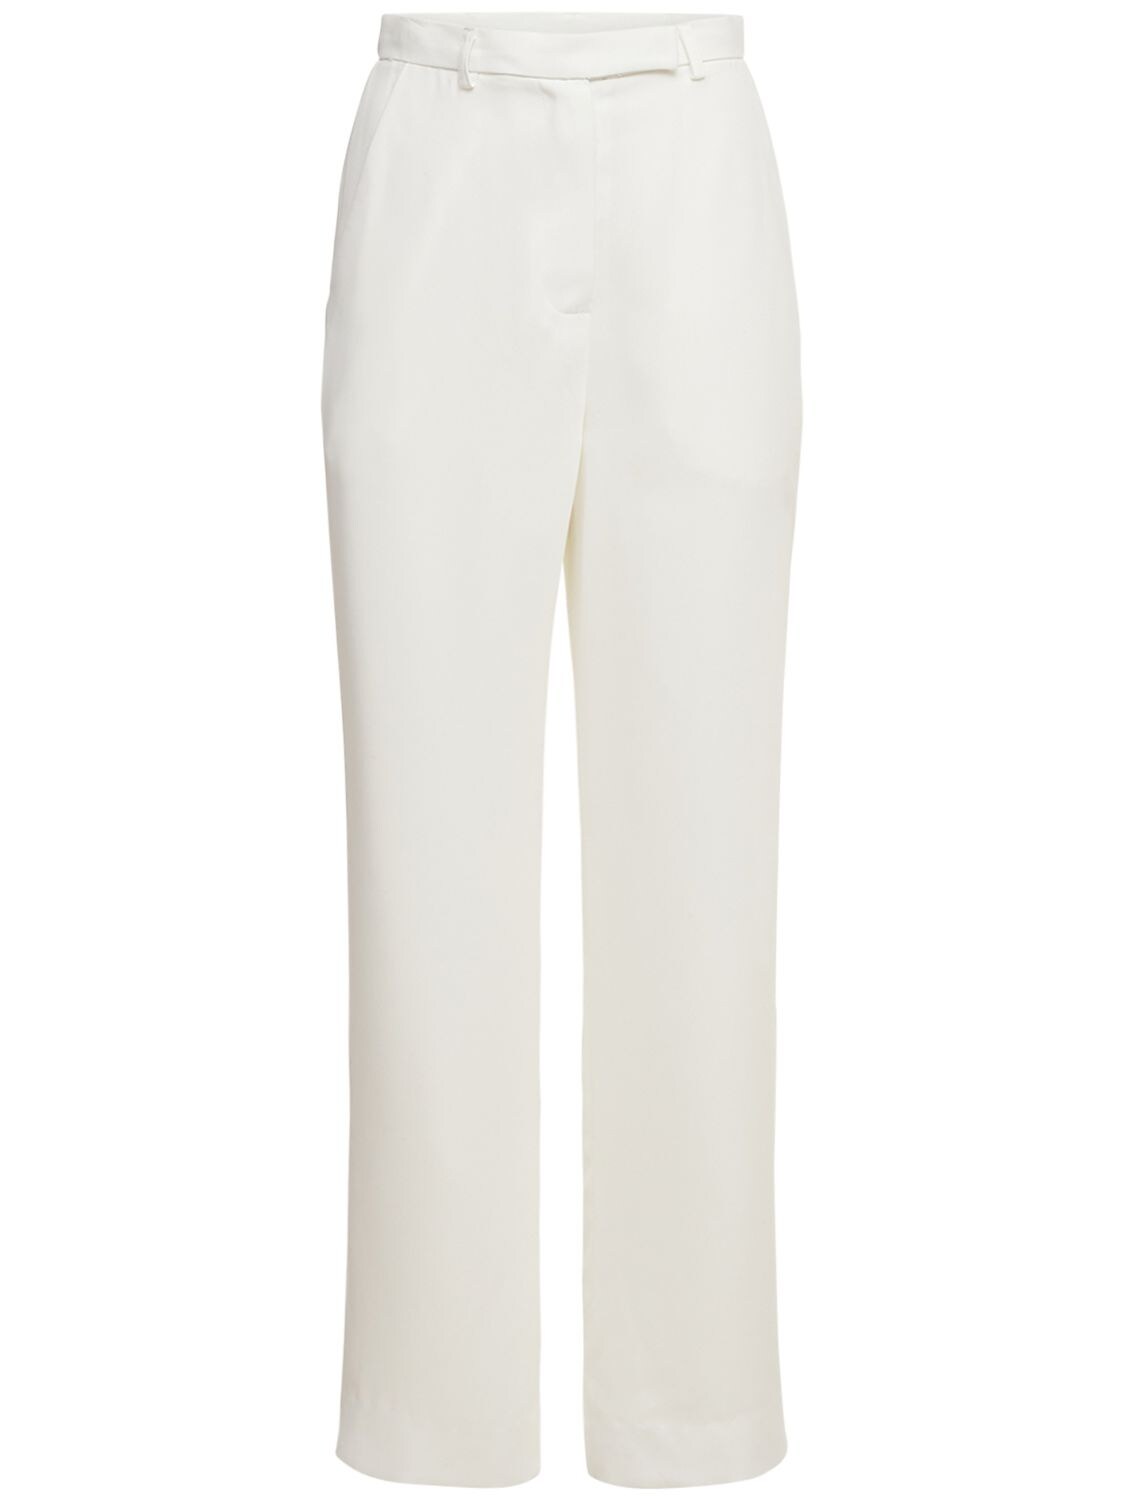 The Frankie Shop - Isla tailored pants - White | Luisaviaroma